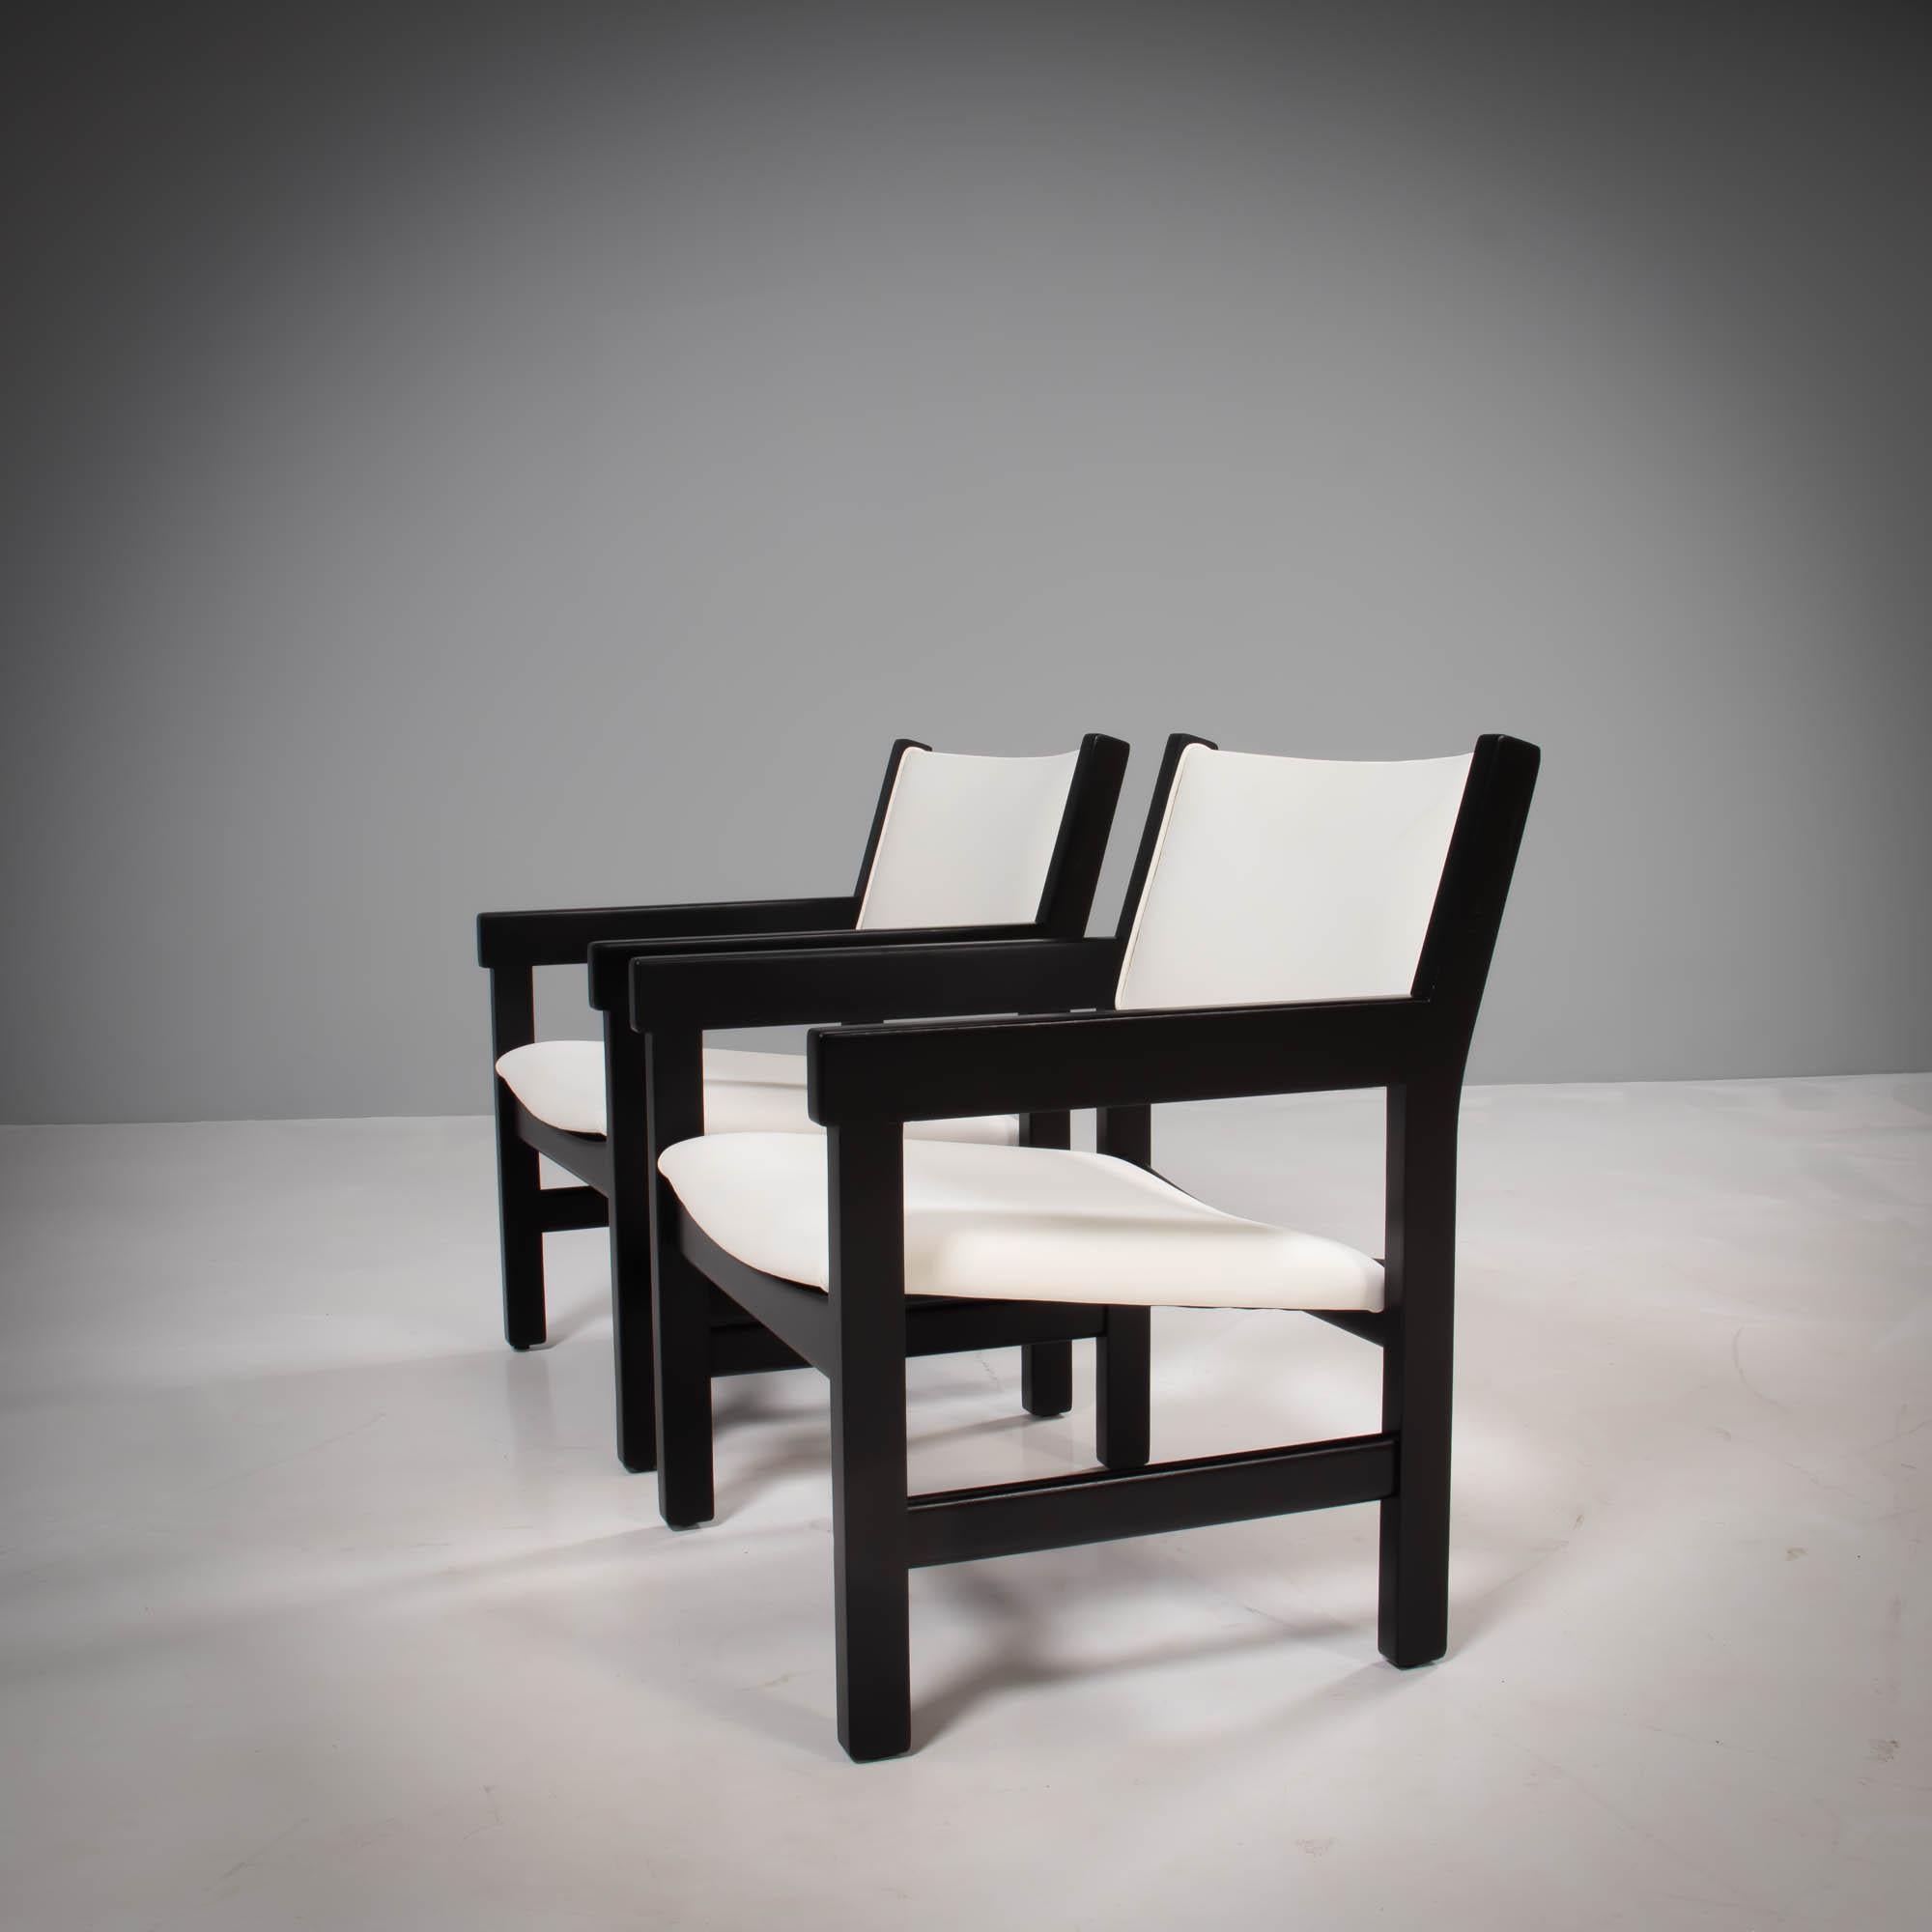 Das von Hans J. Wegner für GETAMA entworfene Sessel-Set GE 151 ist ein klassisches Beispiel für das Design der Jahrhundertmitte.

Die neu restaurierten Stühle mit ihren kantigen, schwarz lackierten Buchenholzrahmen und -armen haben gepolsterte